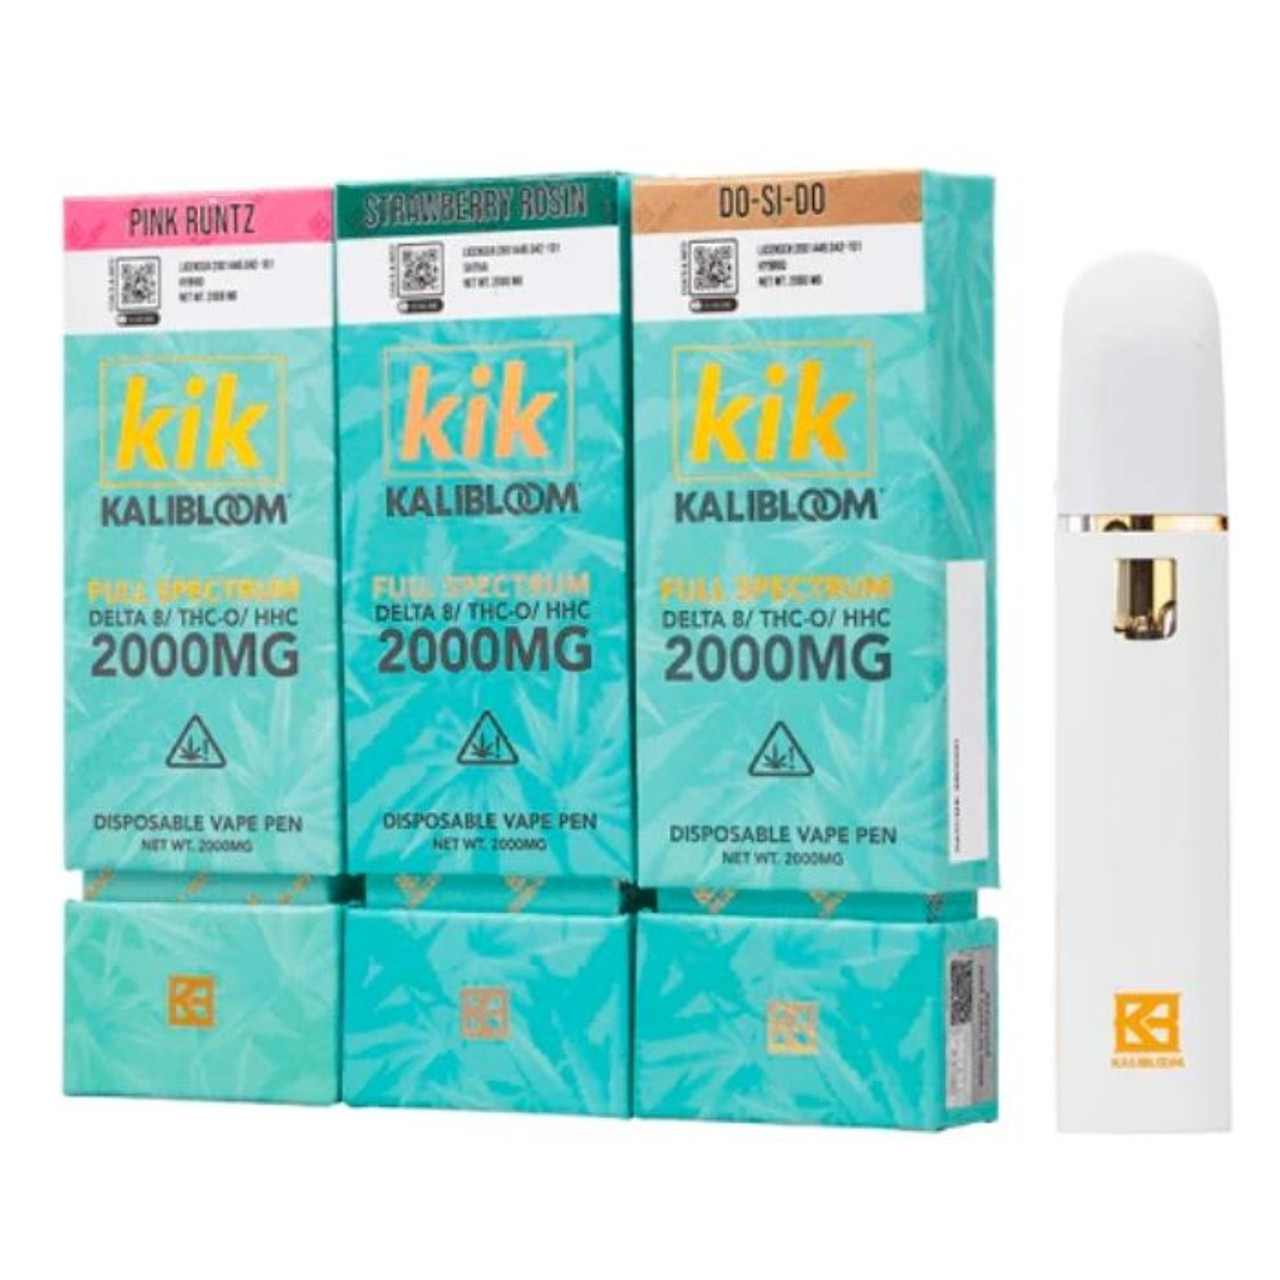 Kalibloom Kik Full Spectrum Delta 8 - THC-O - HHC Disposable 2G